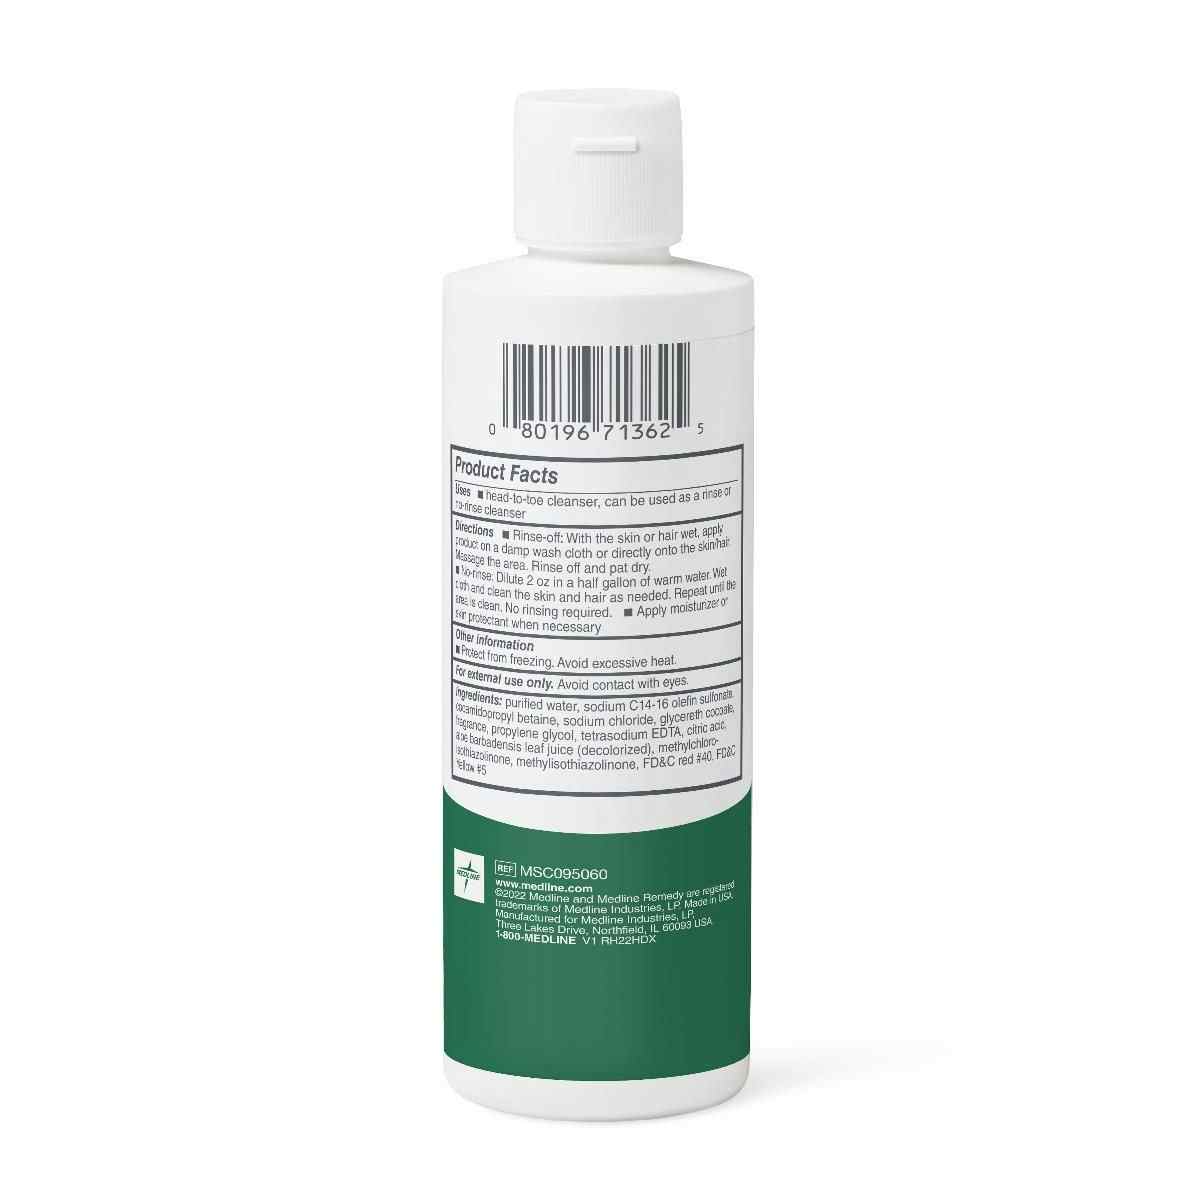 Medline Remedy Essentials Shampoo & Body Wash, Kiwi Mango Scented